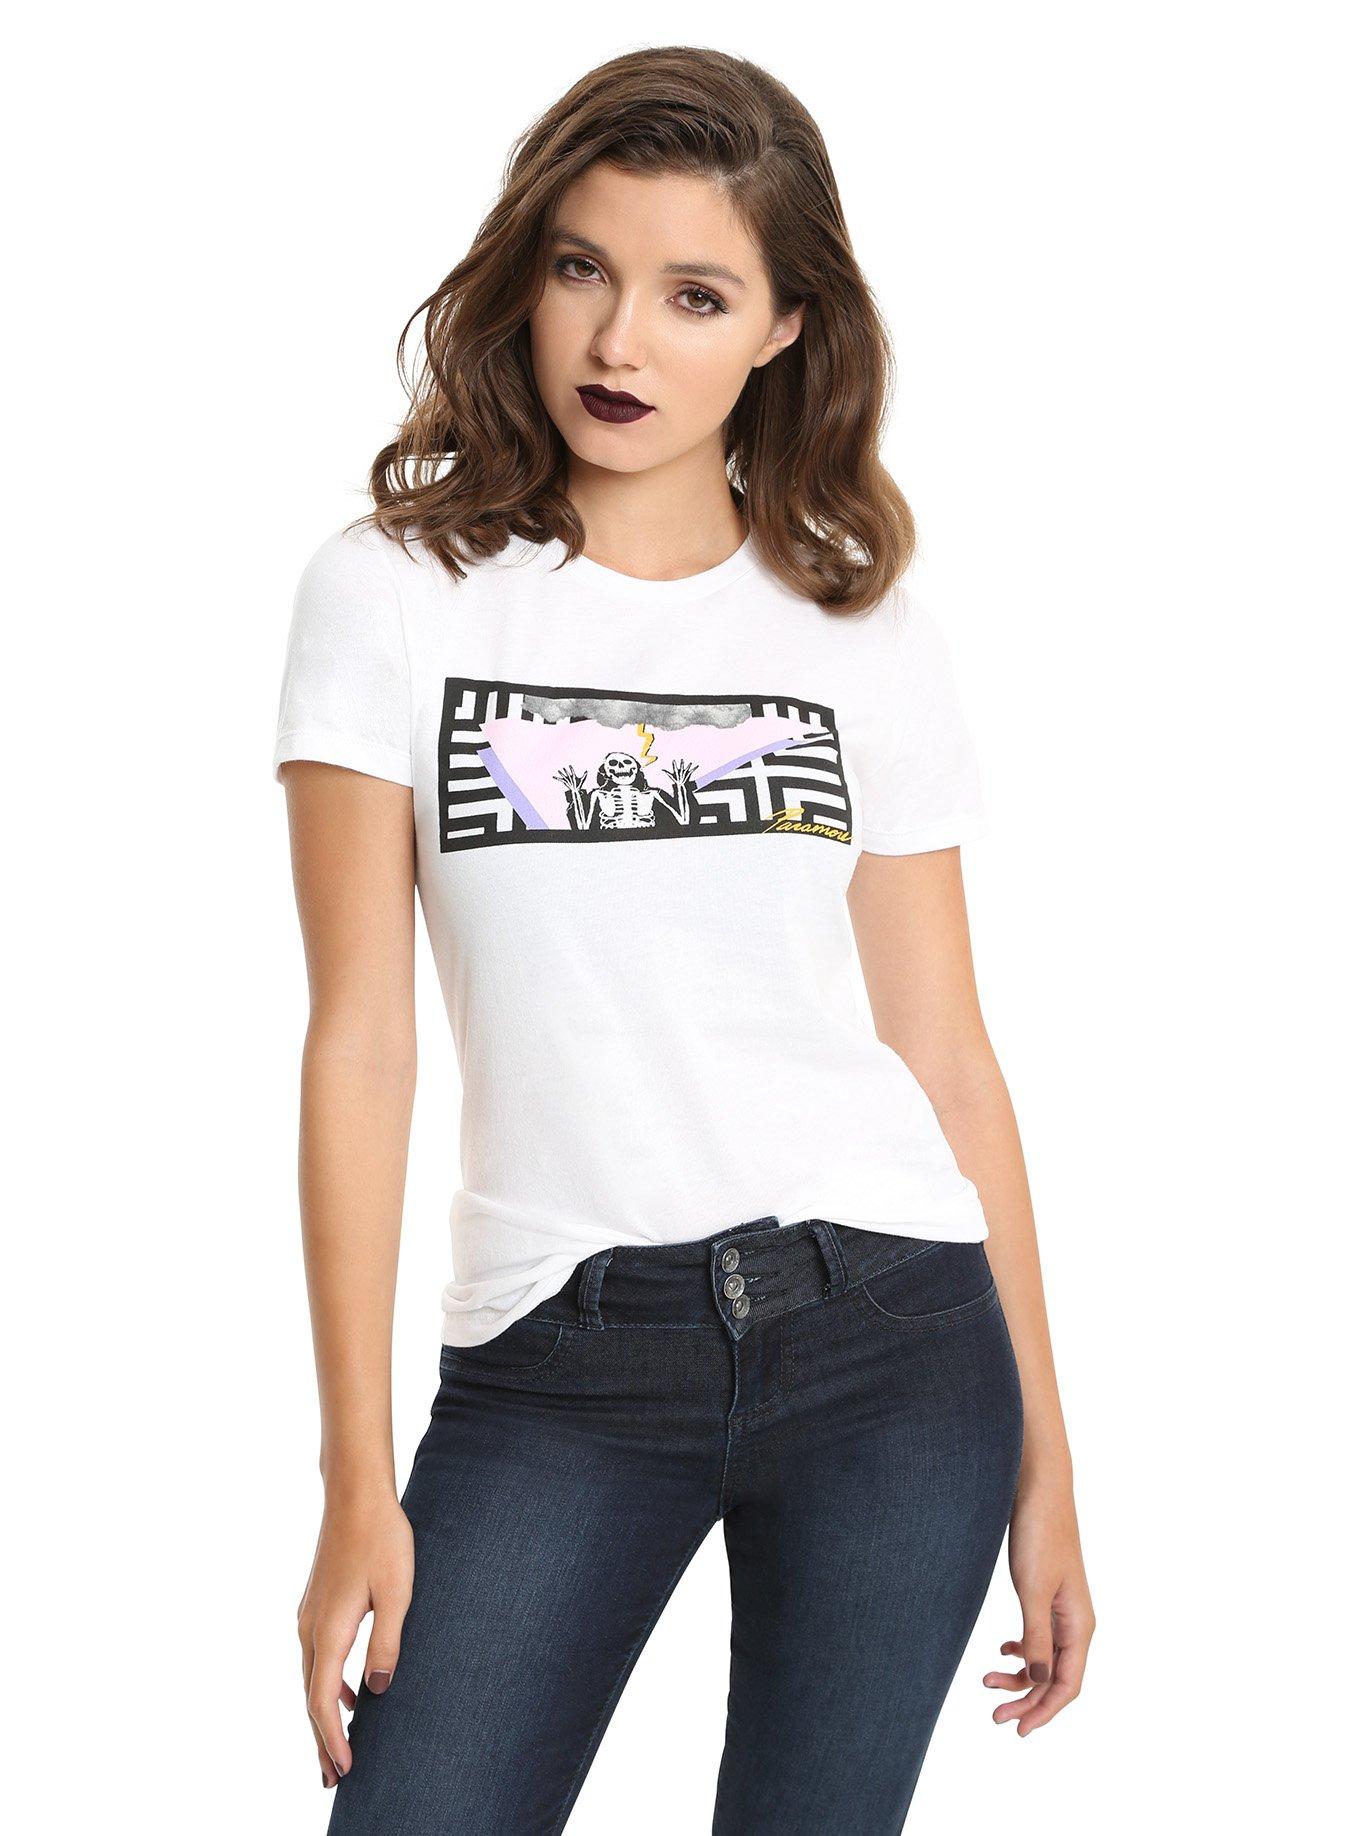 Paramore Hard Times Girls T-Shirt, WHITE, hi-res